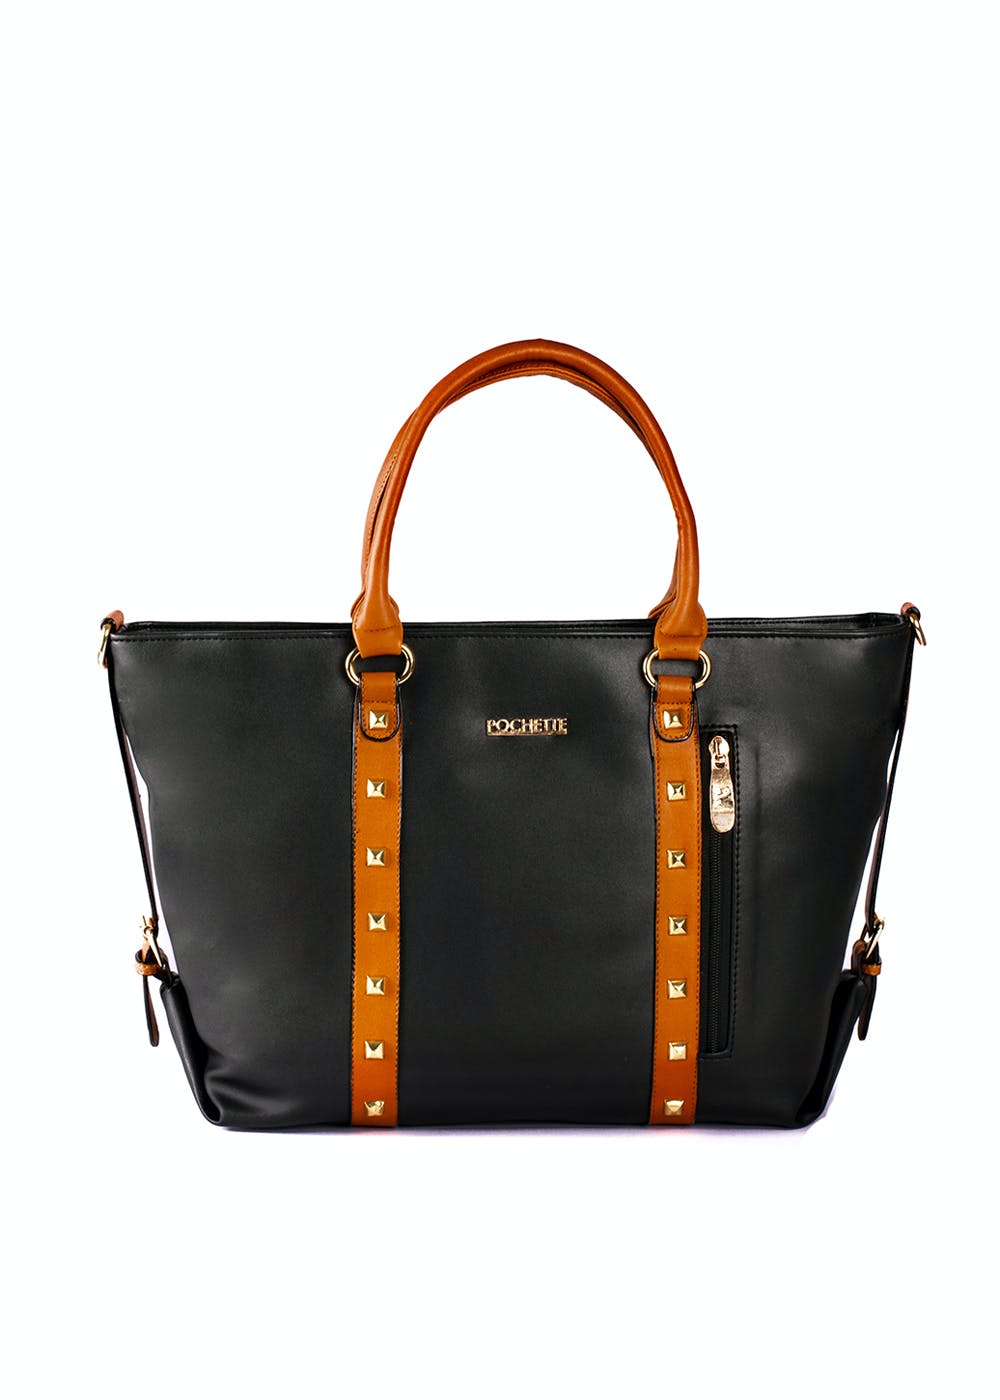 Embellished Contrast Panel Handles Detail Black Handbag